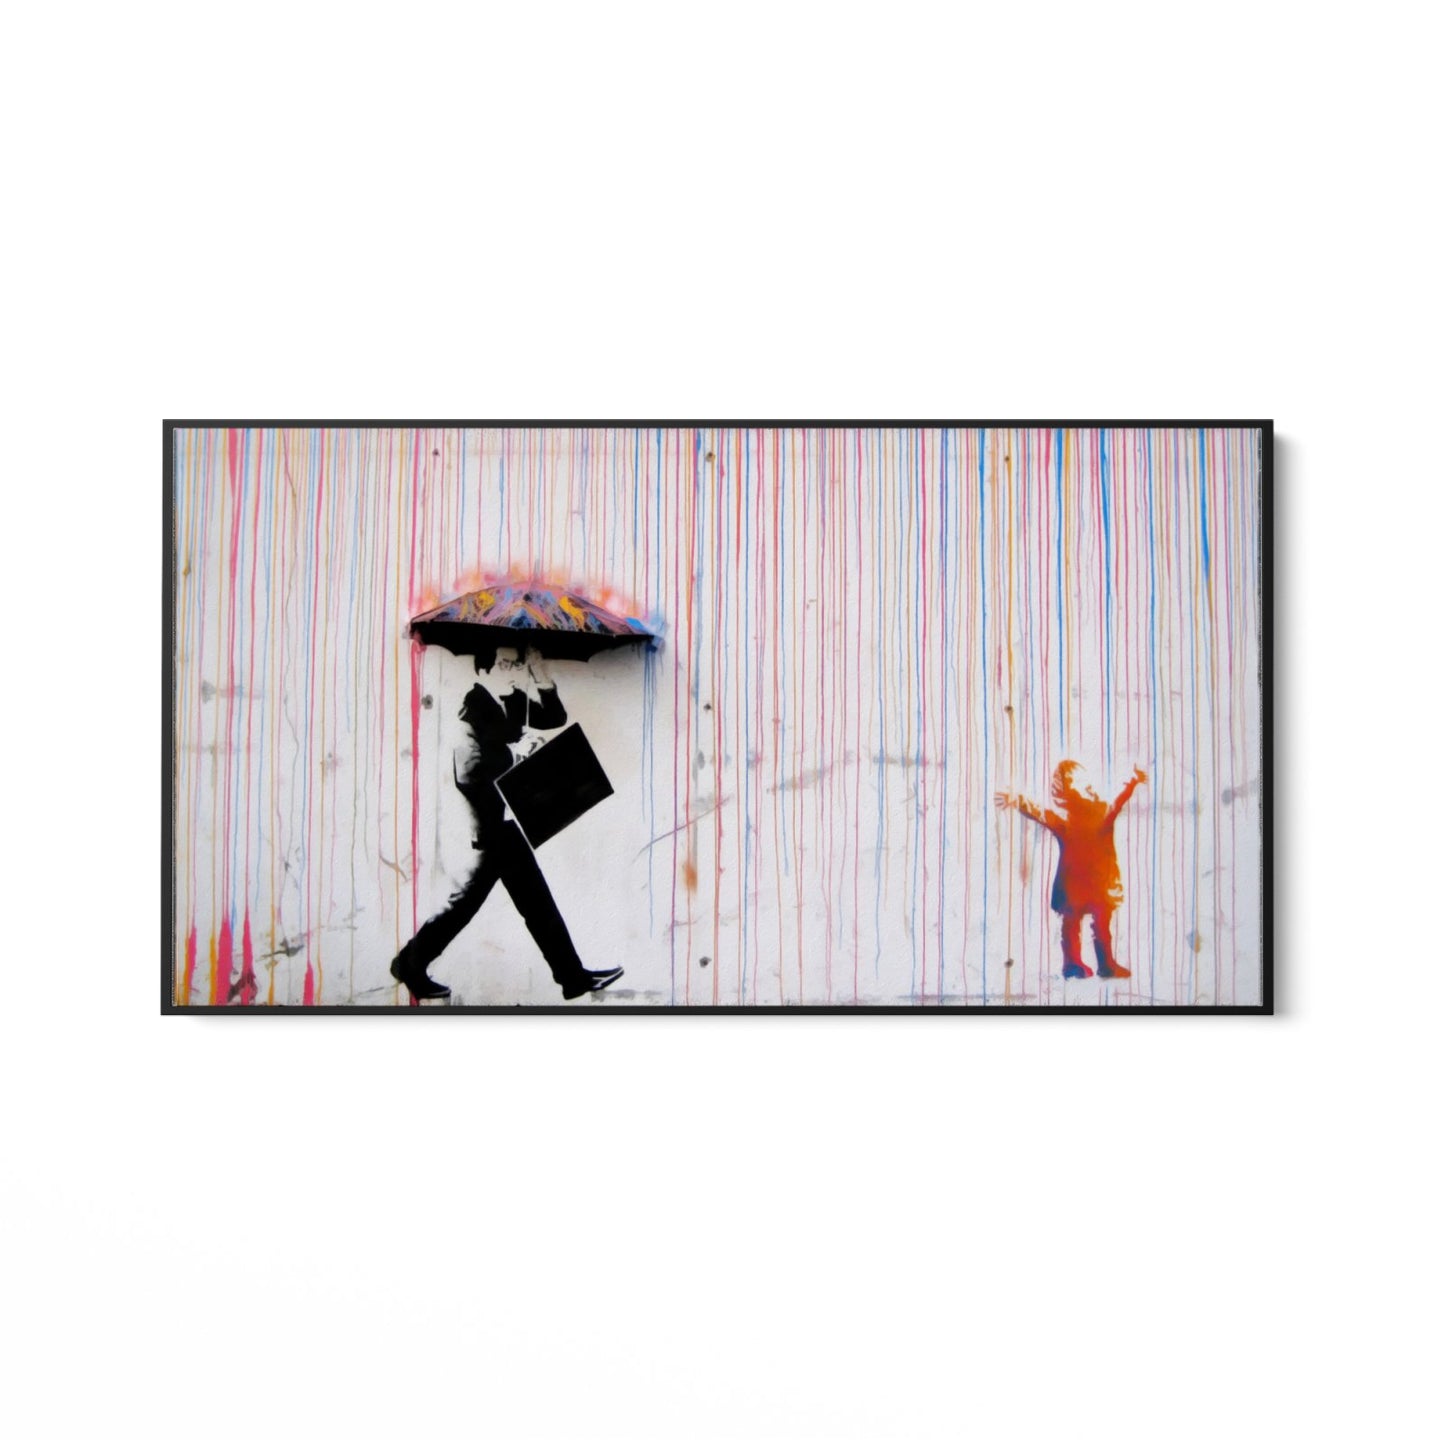 Färgat regn, Banksy